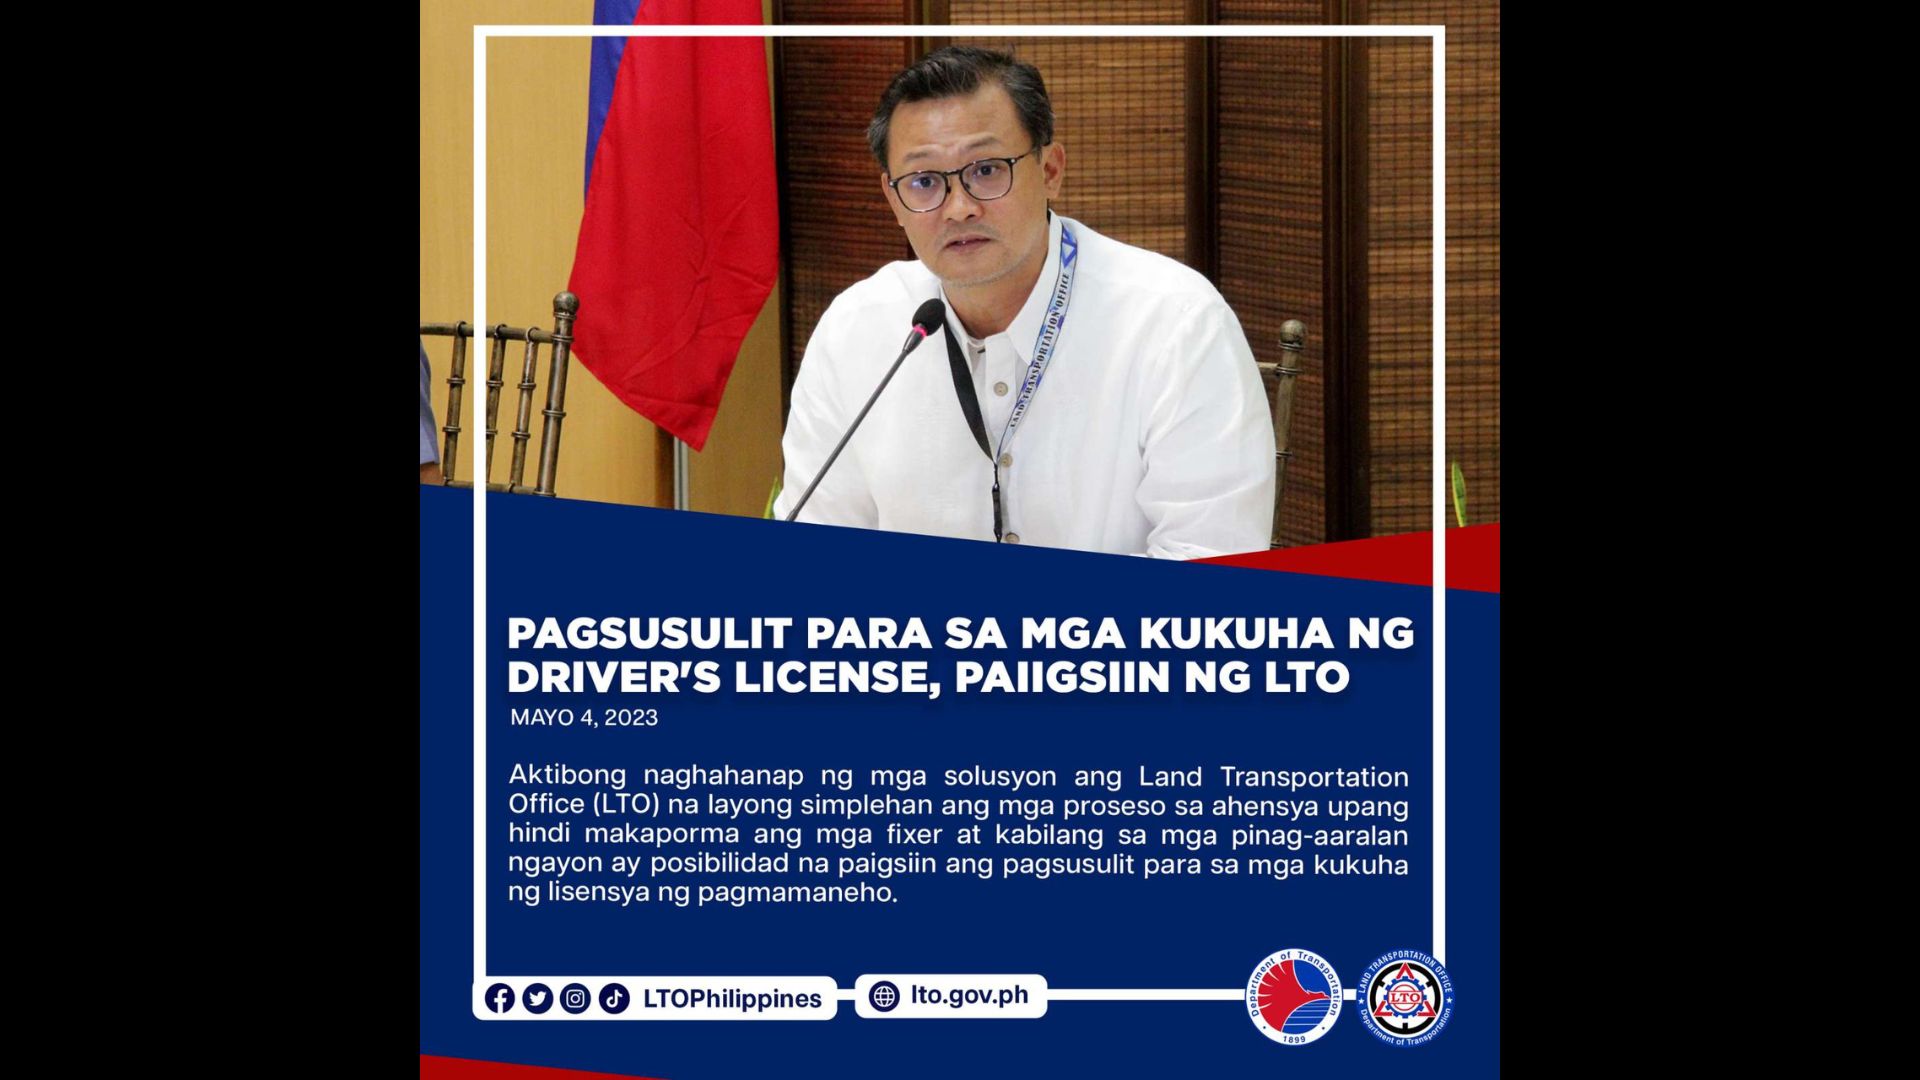 Pagsusulit para sa mga kukuha ng driver’s license paiiksiin ng LTO